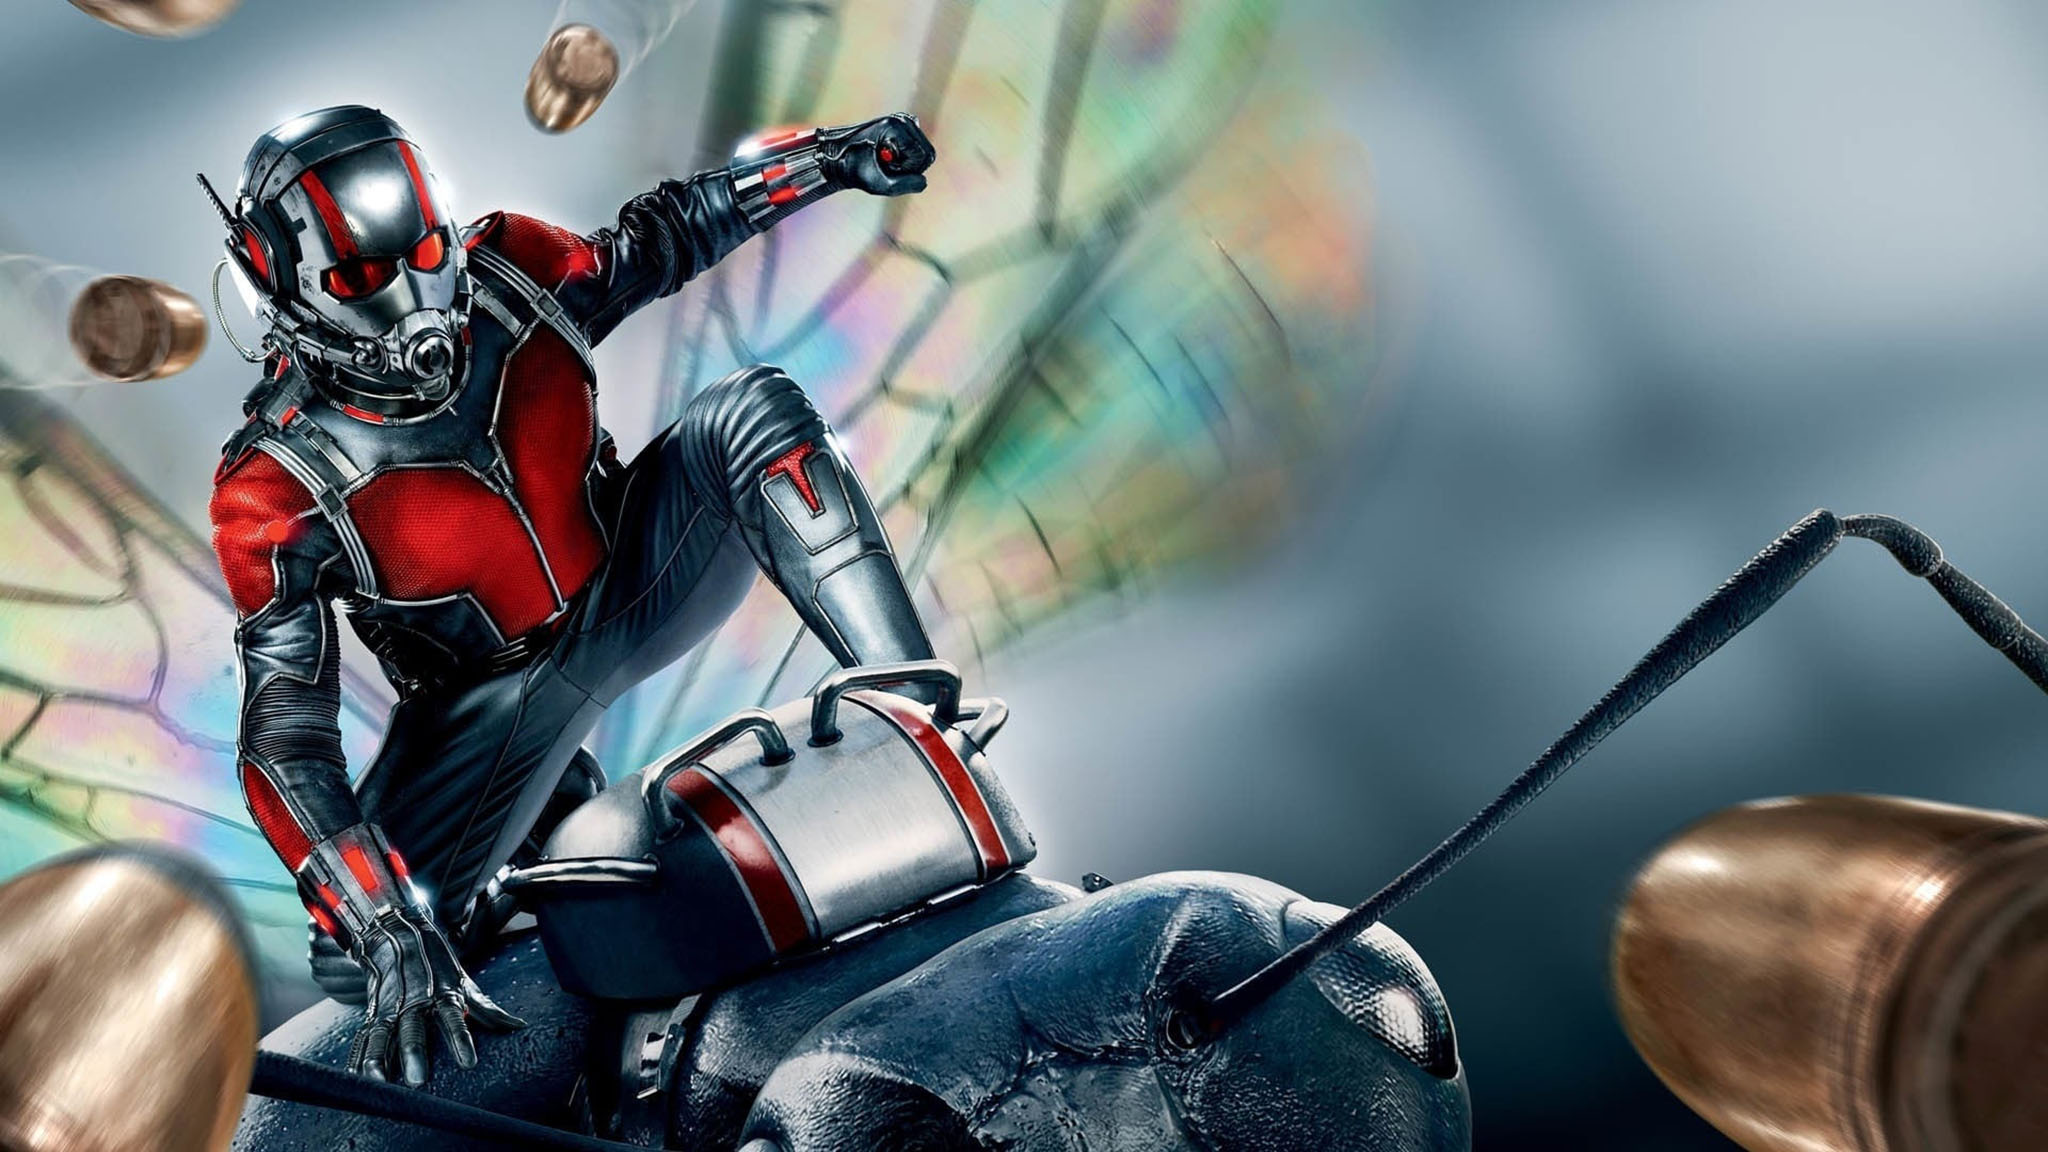 فيلم Ant-Man 2015 مترجم